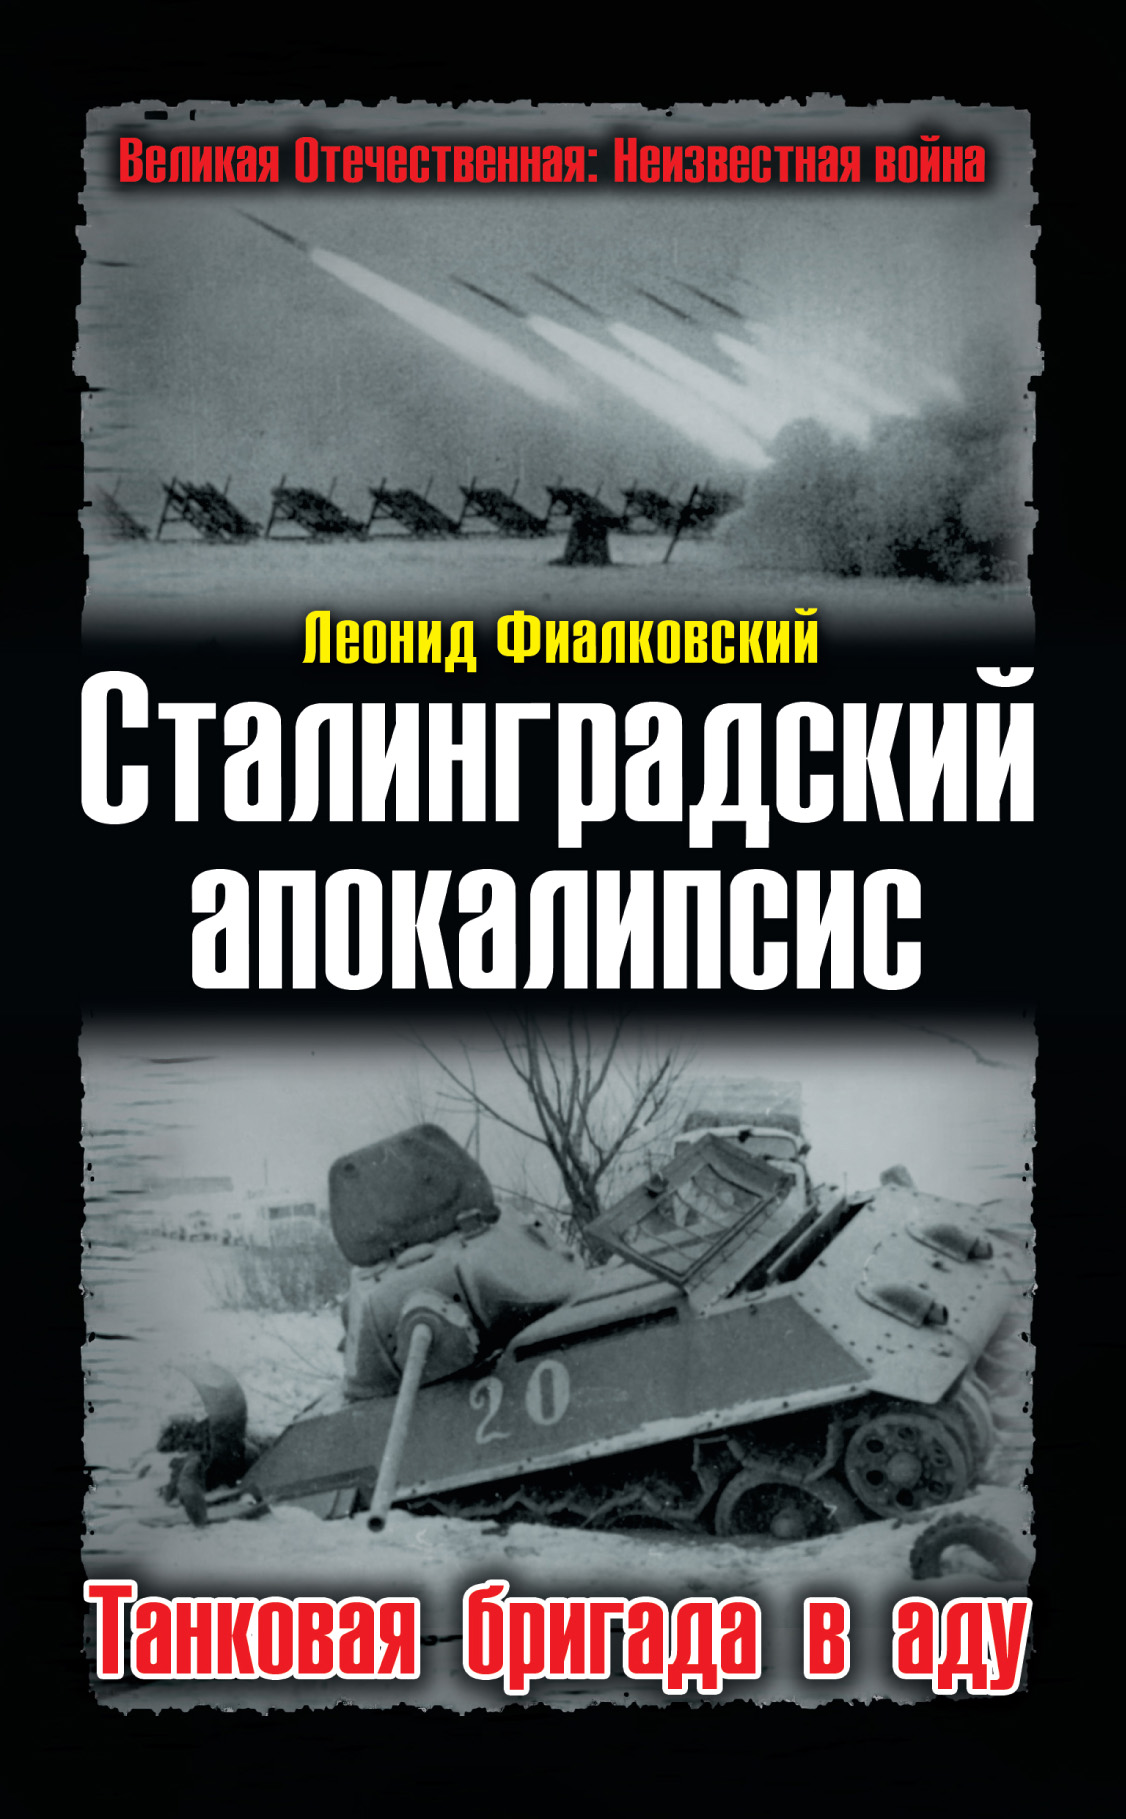 Сталинградский апокалипсис. Танковая бригада в аду